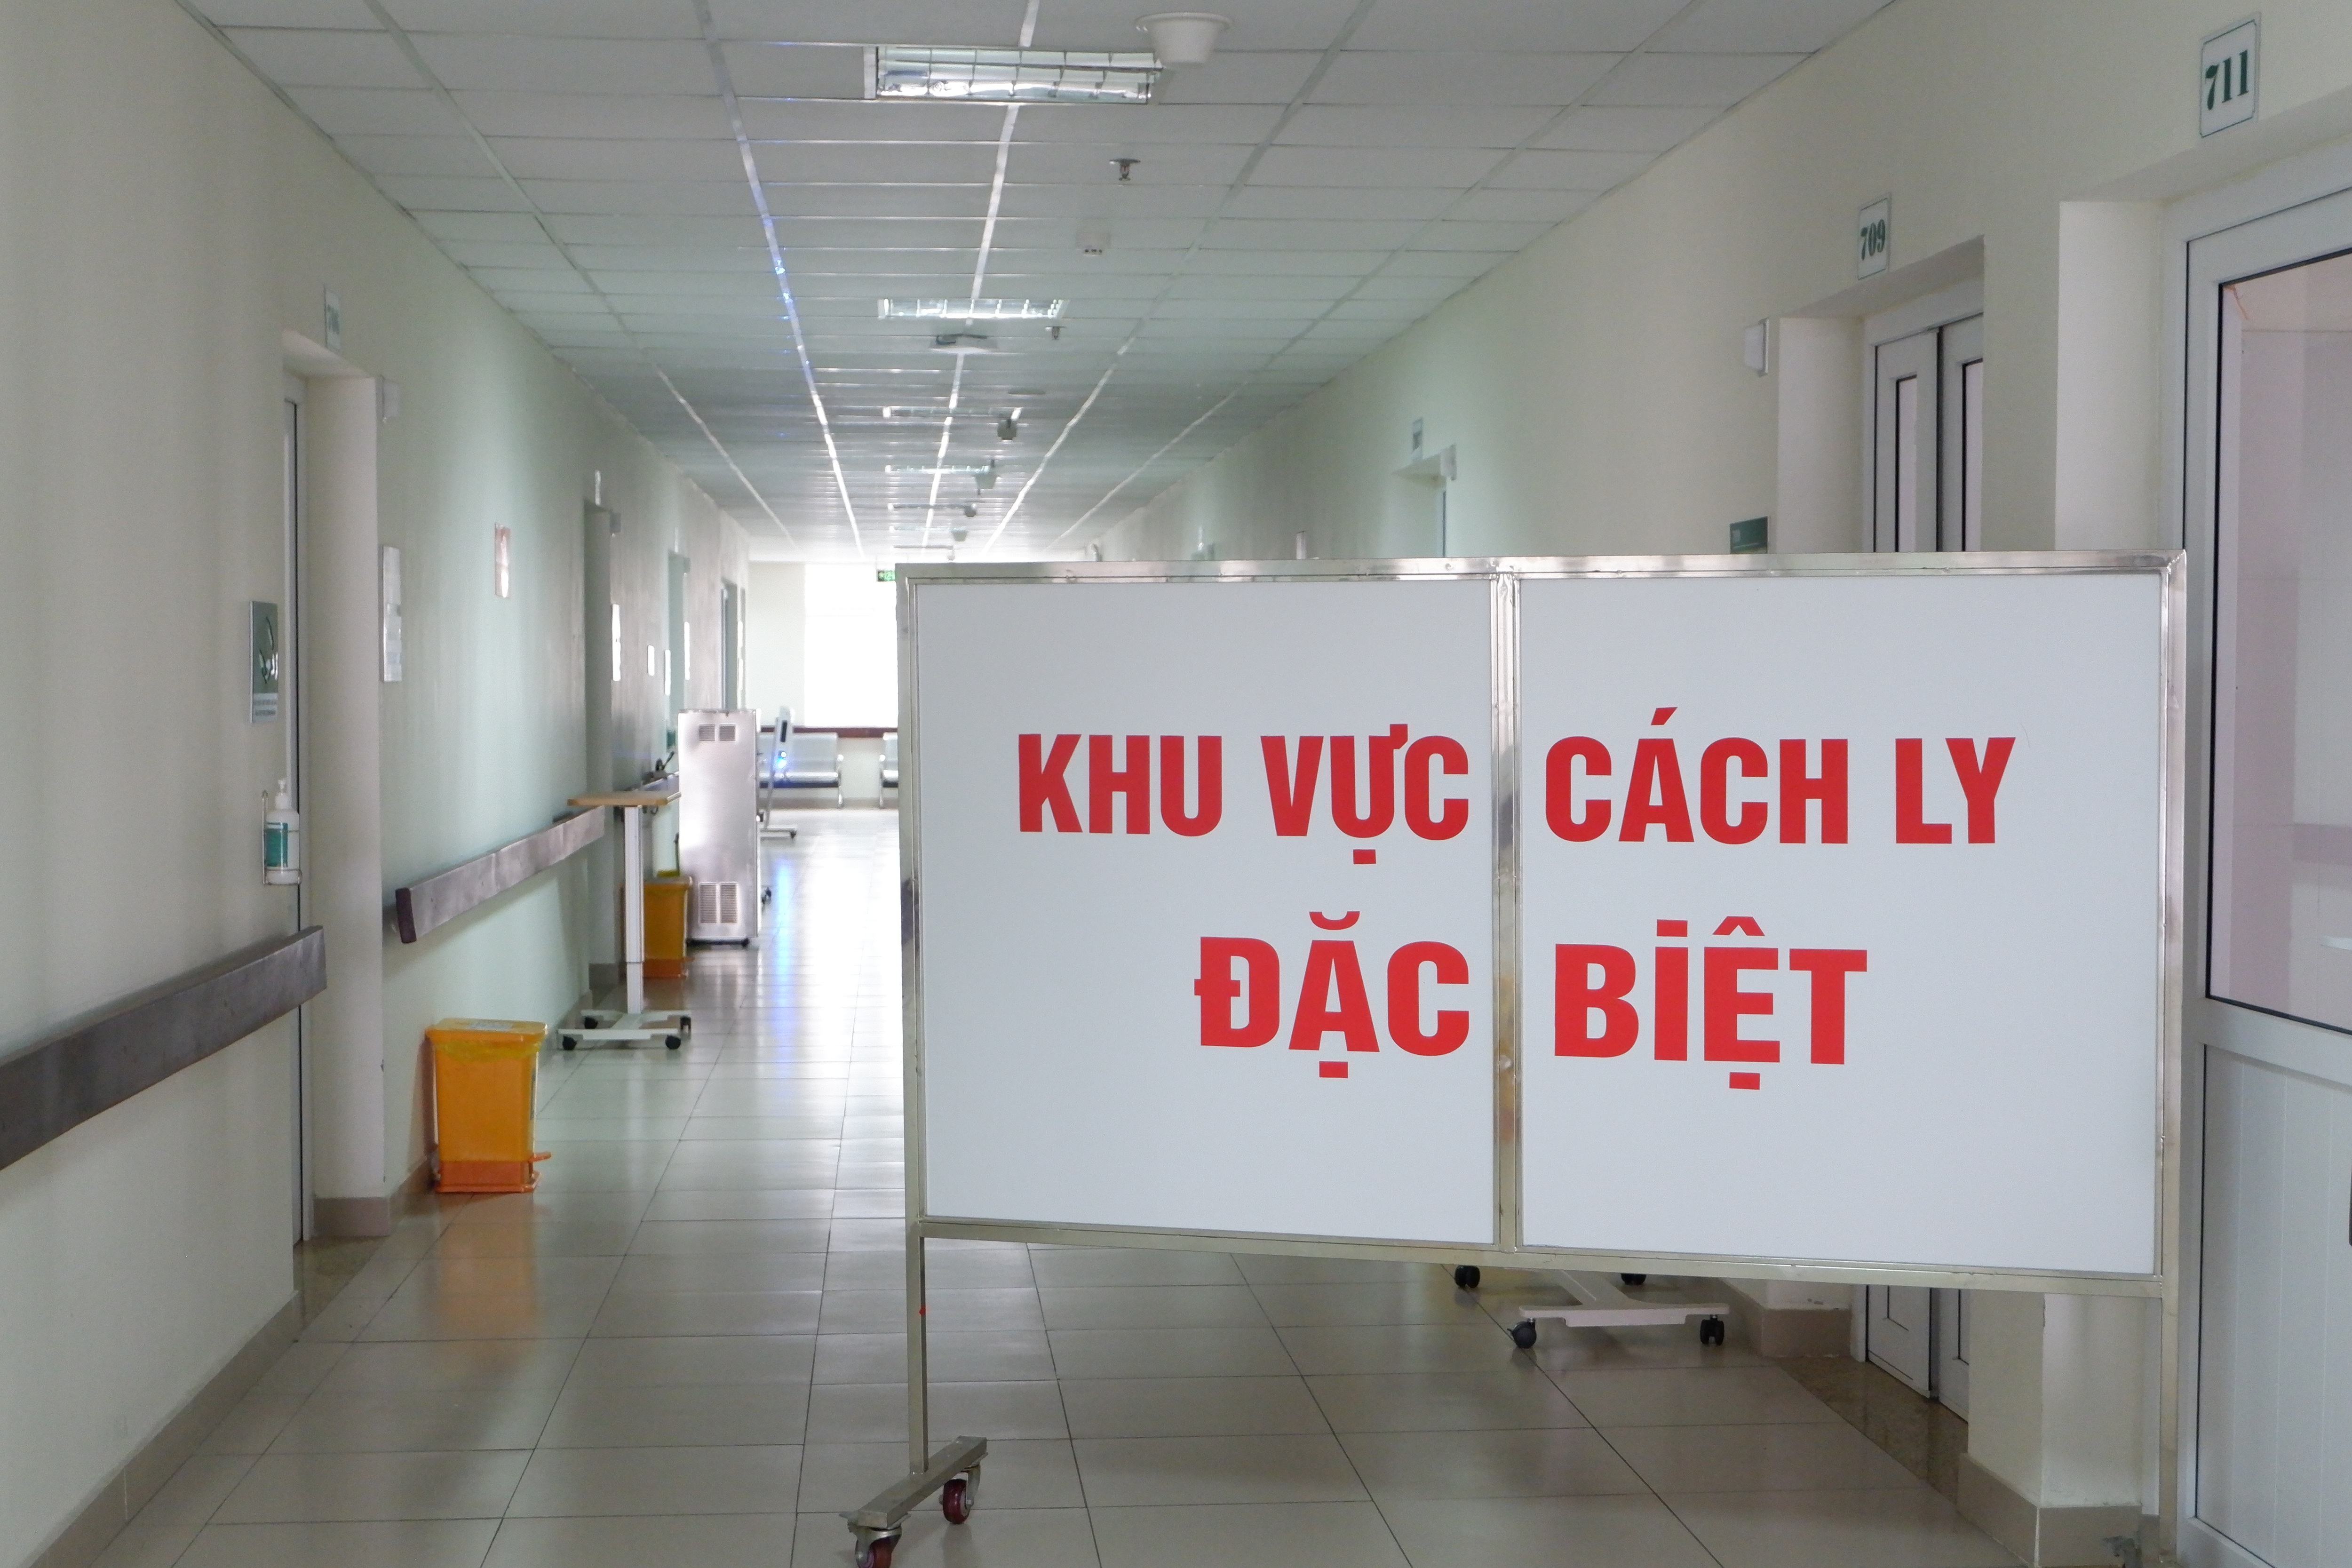 Bệnh nhân Covid-19 ở Quảng Ninh suy hô hấp, tổn thương phổi nặng - Ảnh 5.